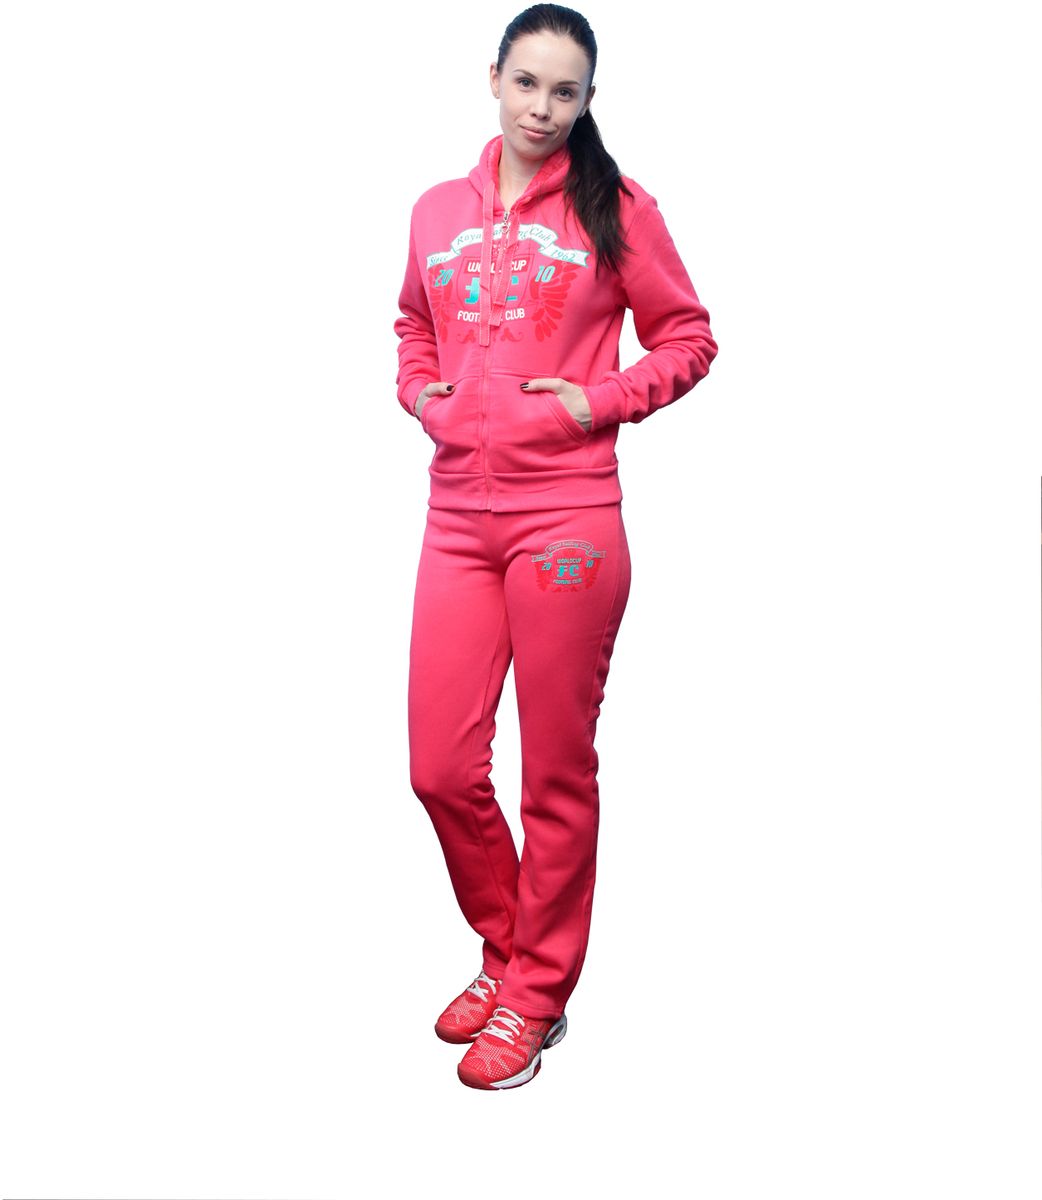 Sport ozon. Прогулочный спортивный костюм женский. Розовый спортивный костюм женский. Спортивный костюм женский для прогулок. Спортивный костюм синтетика женский.